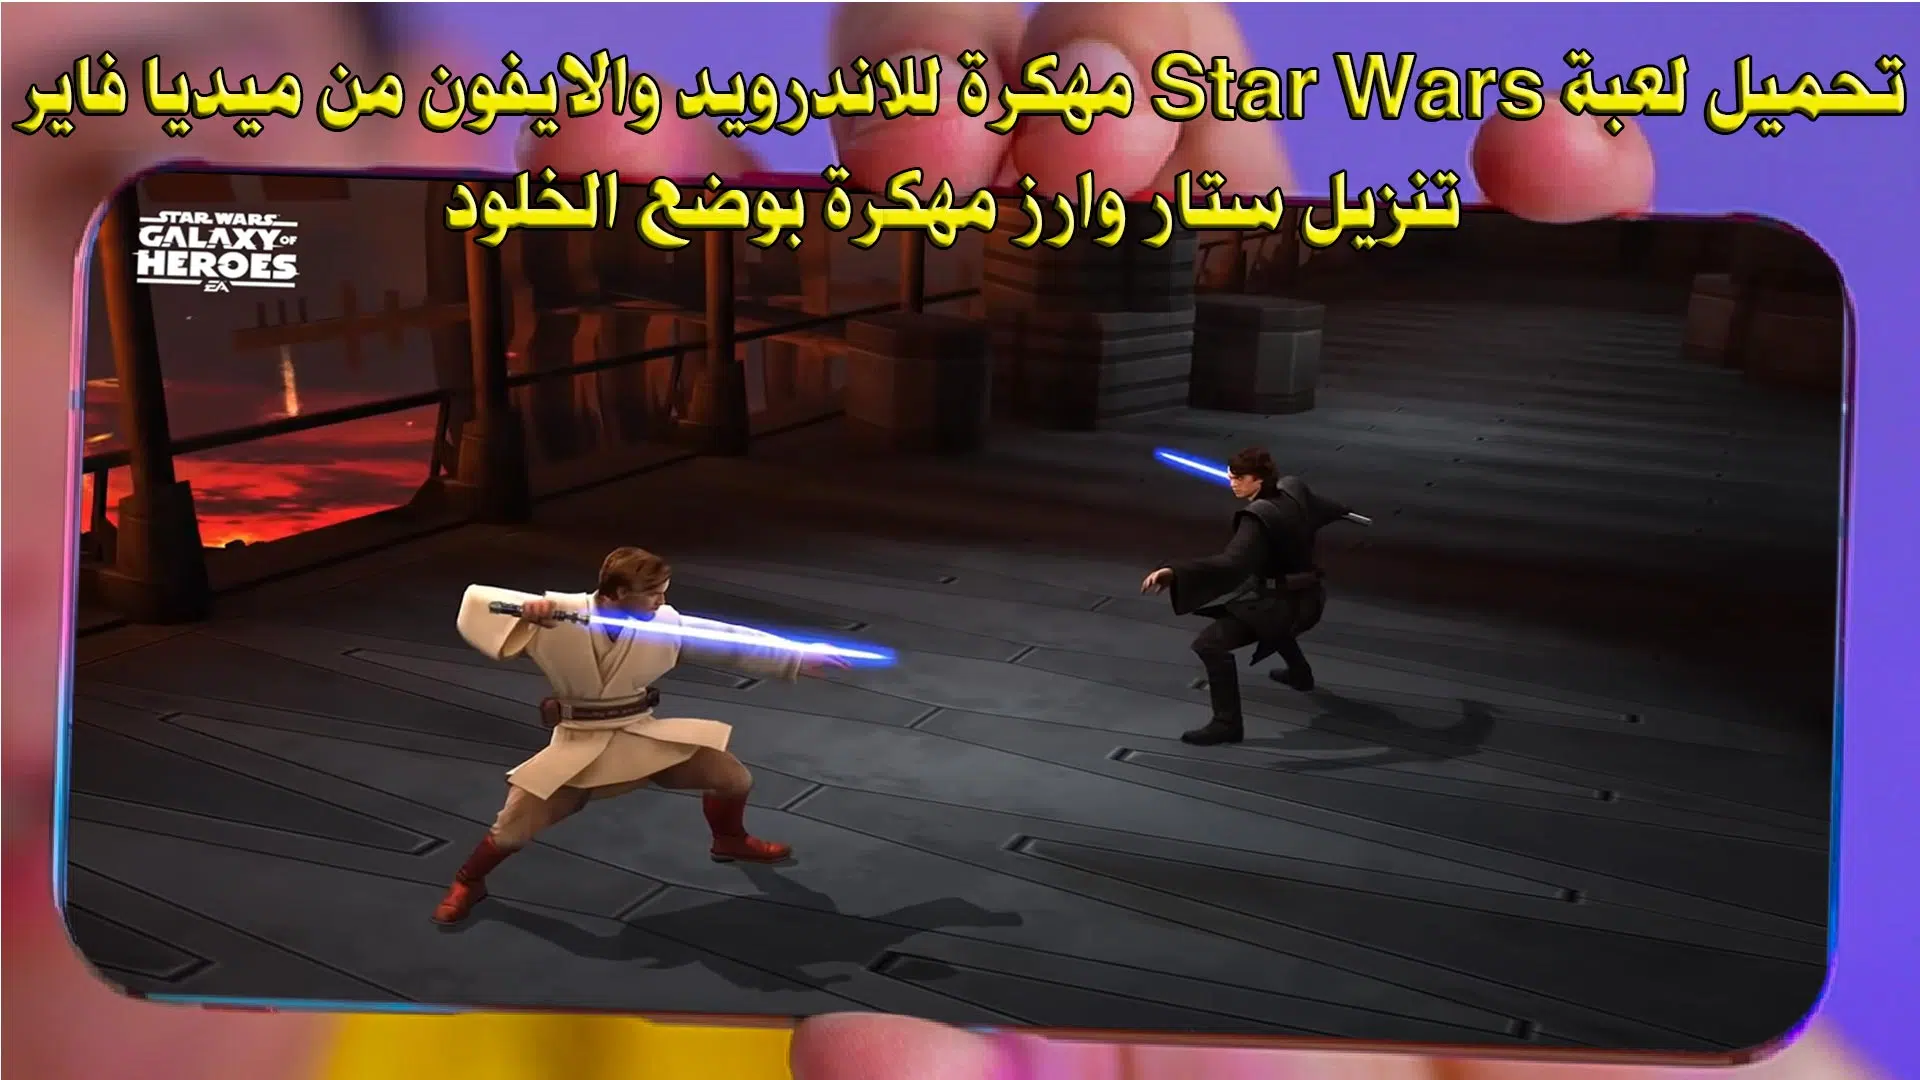 تحميل لعبة Star Wars مهكرة للاندرويد والايفون من ميديا فاير احدث اصدار - تنزيل ستار وارز مهكرة بوضع الخلود